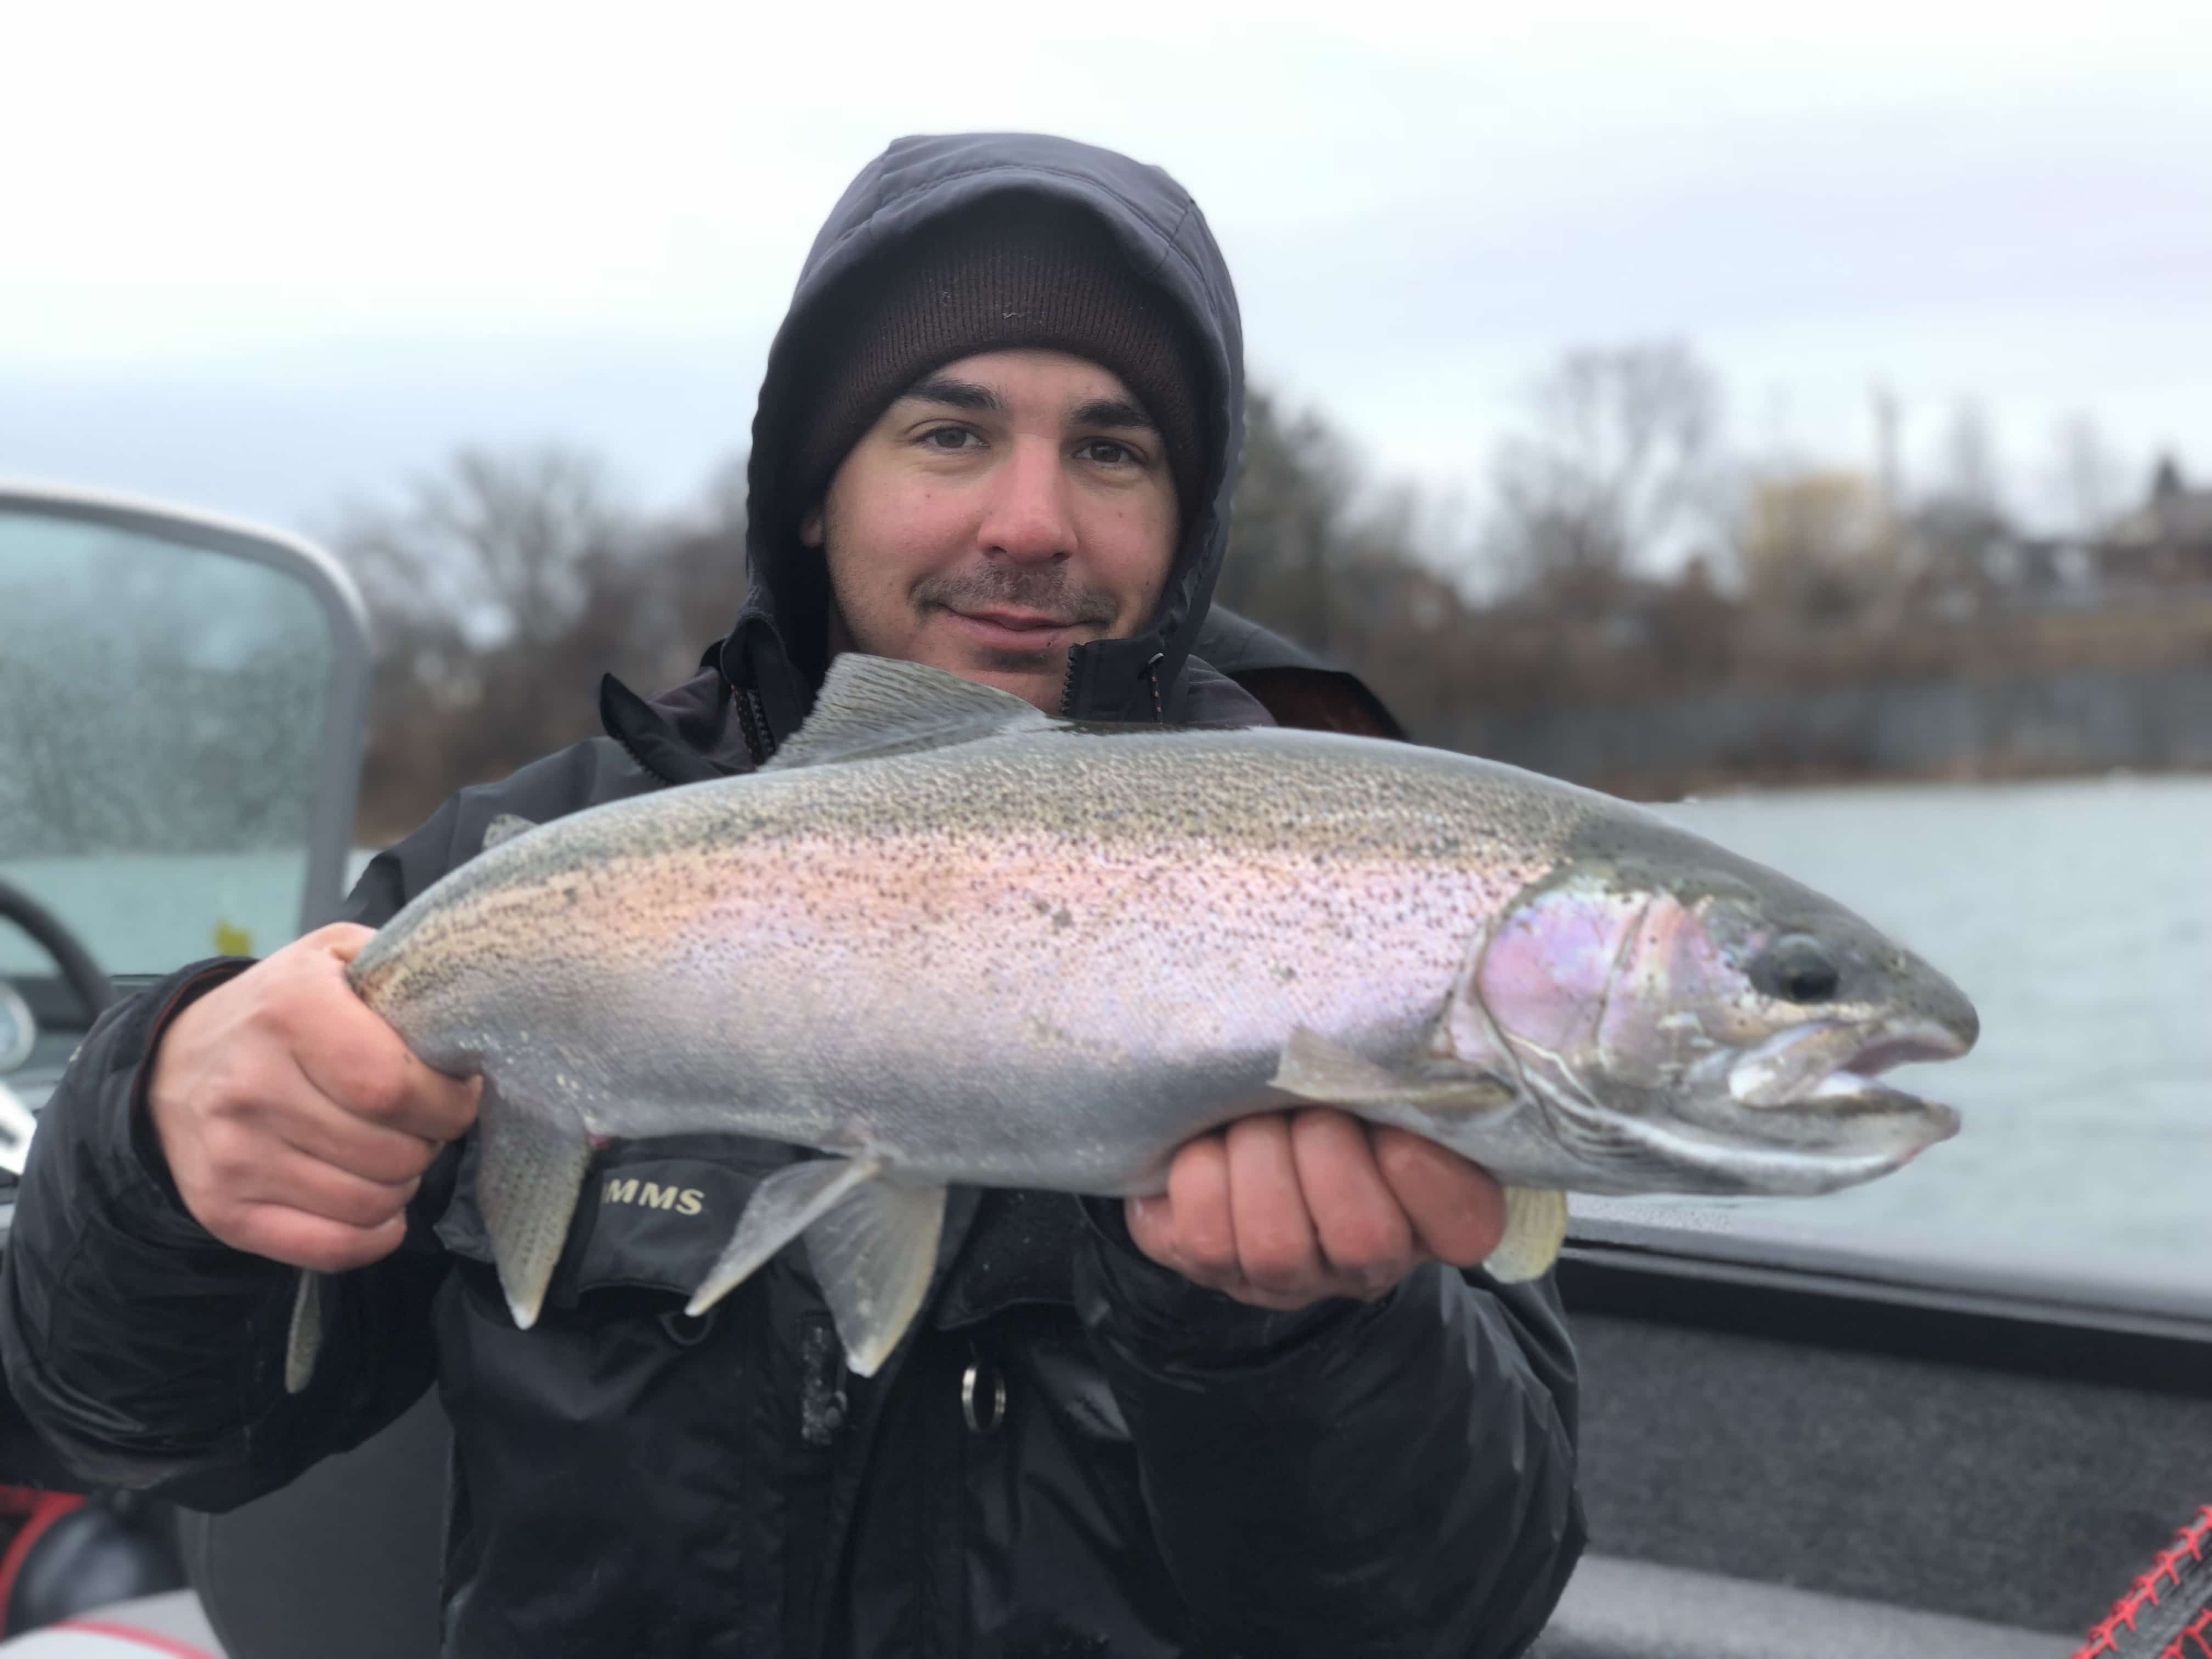 20180327 165931724 iOS - Winter Charter Fishing in Buffalo Niagara